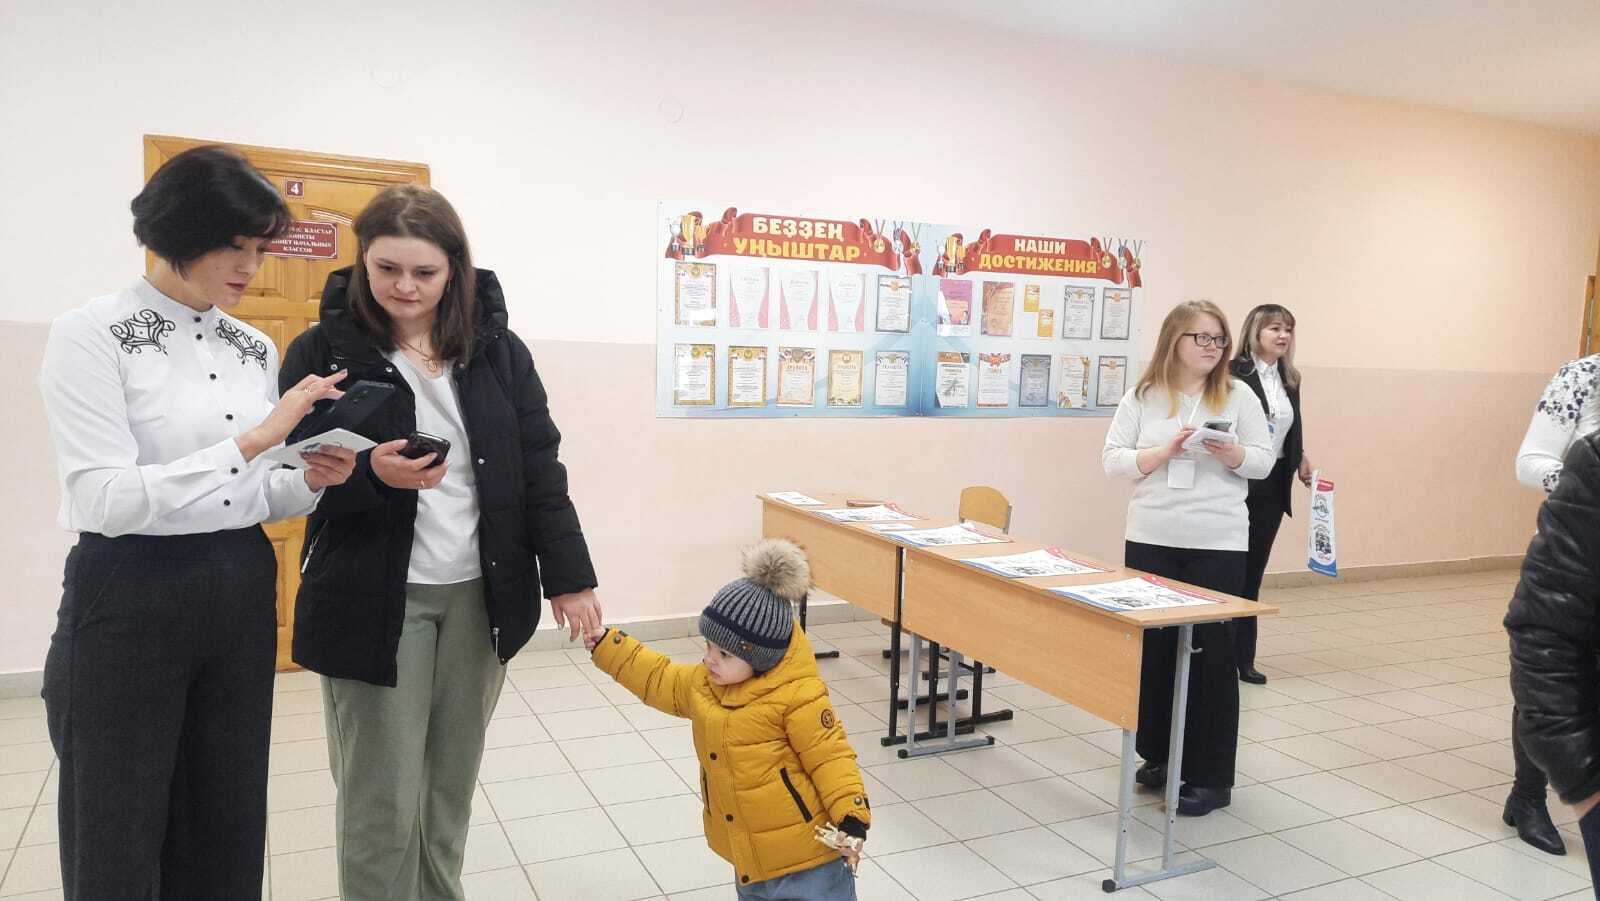 Первые избиратели на выборах Президента России в Башкирии уже получили из рук волонтеров QR-билет